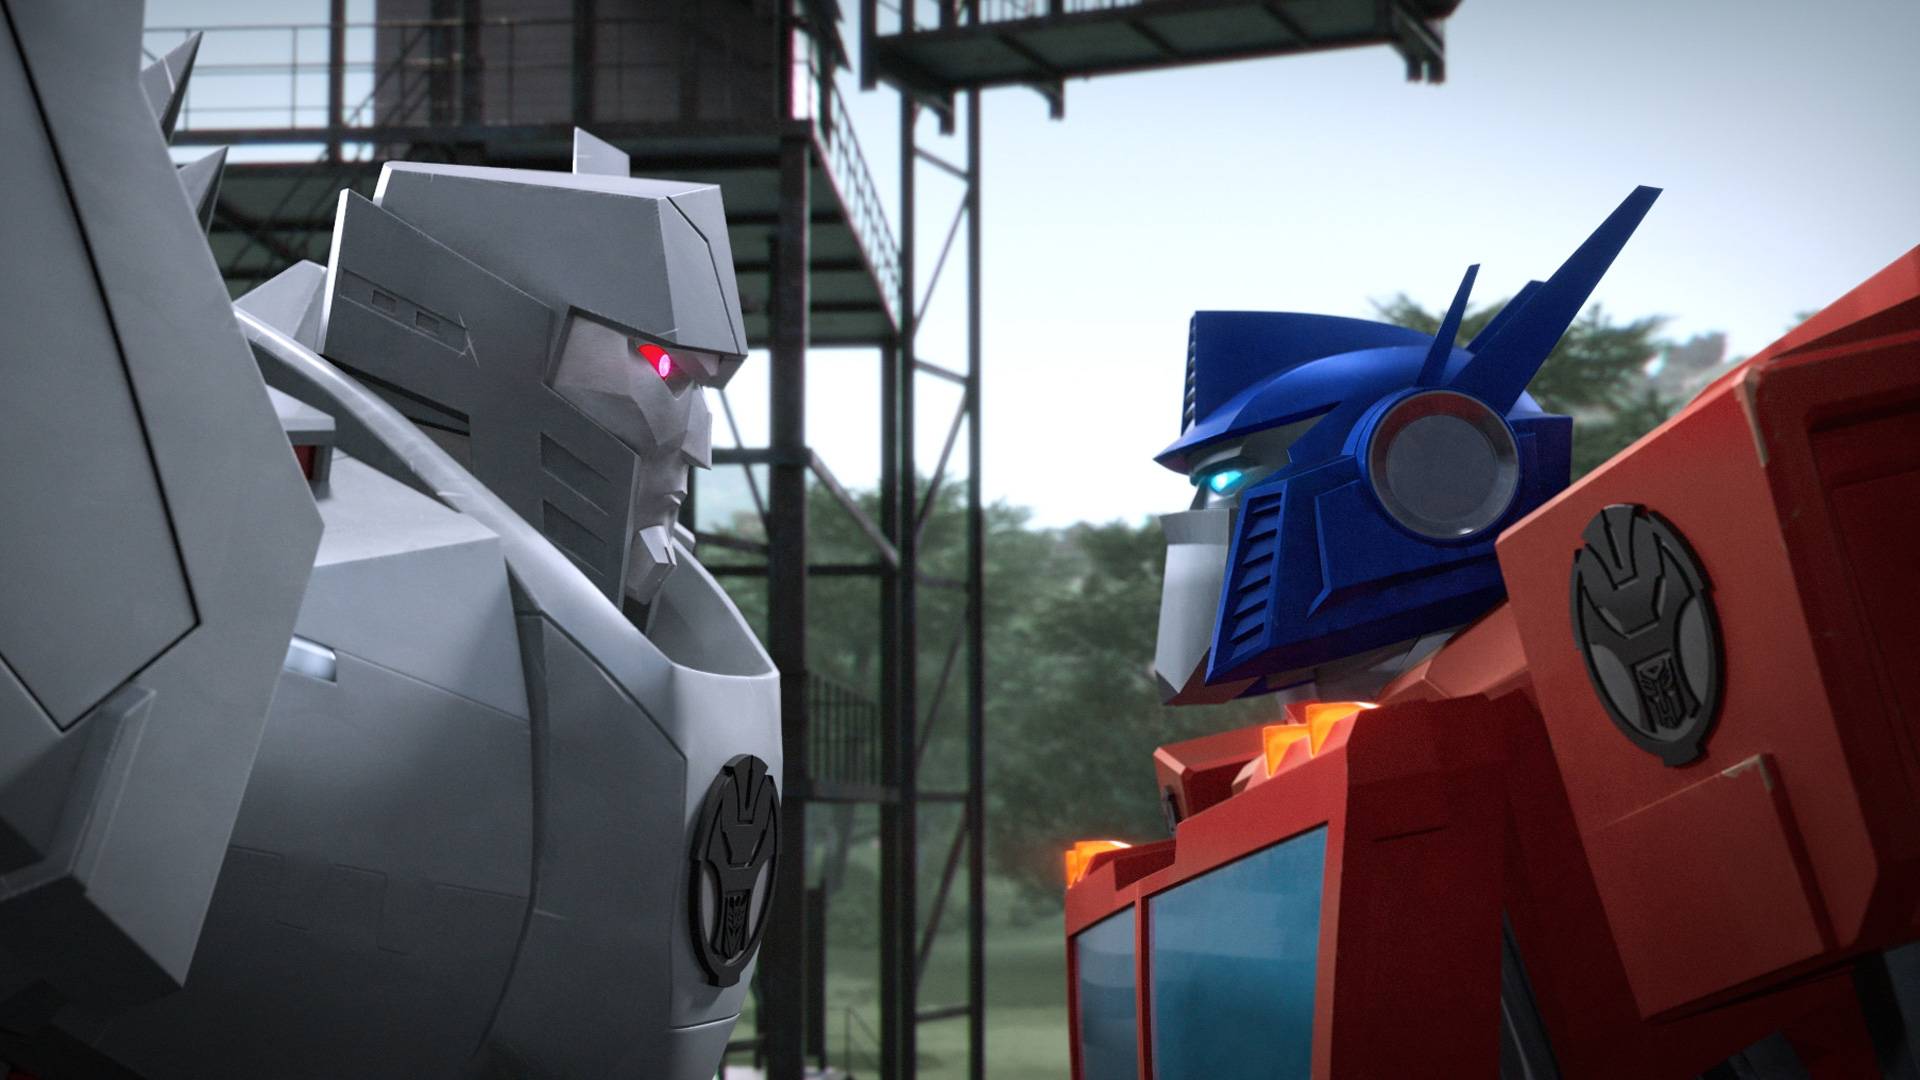 Transformers: Prime, S02 E09, FULL Episode